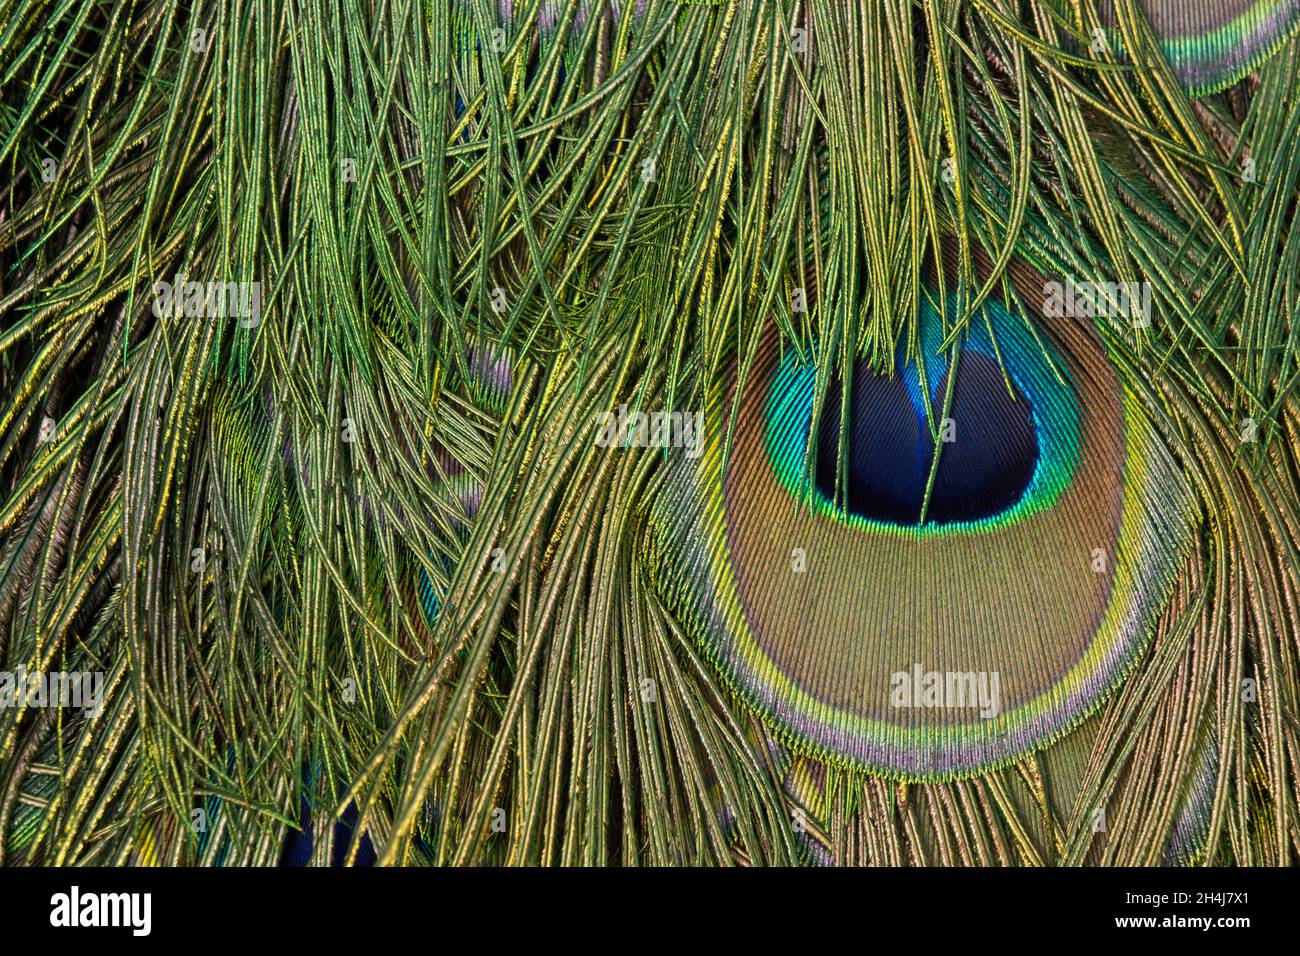 Detailfoto des Auges in einer Pfauenfeder Stockfoto